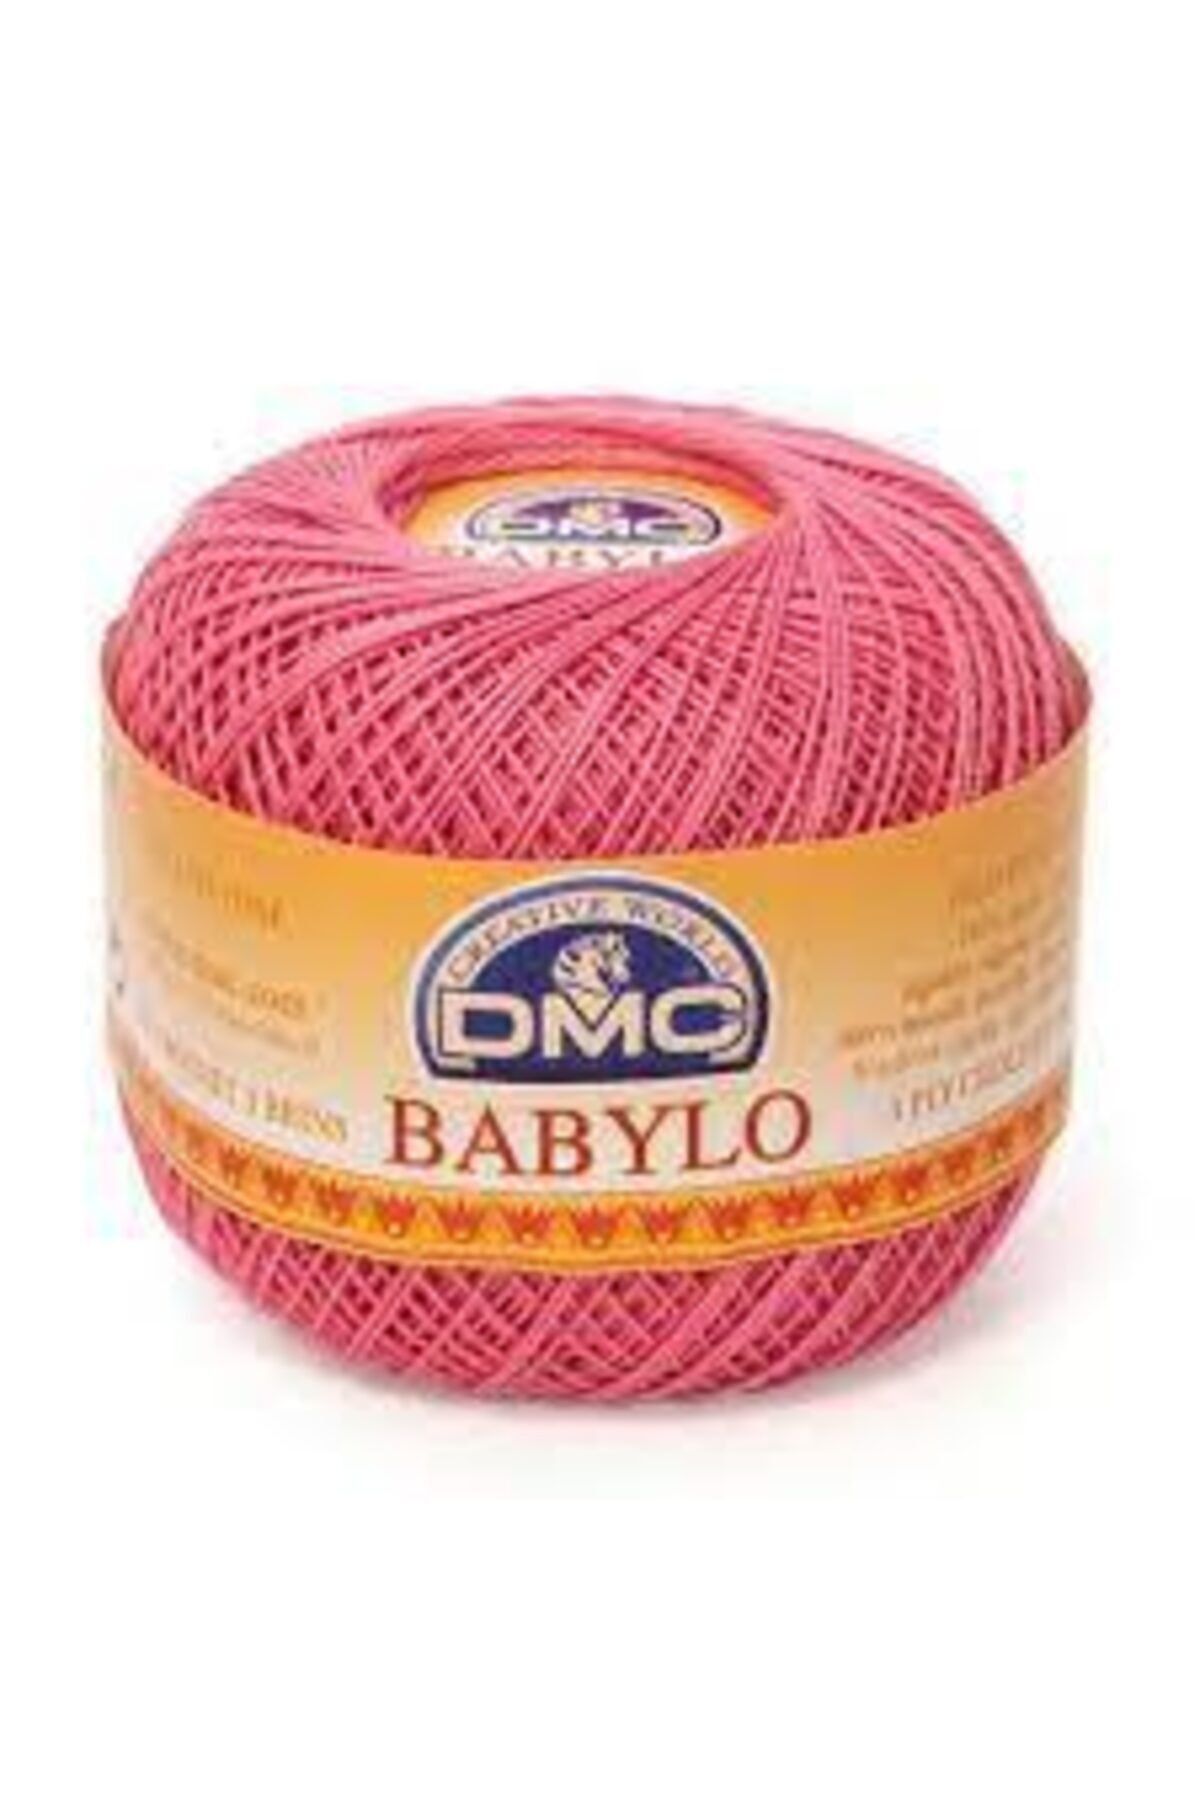 Dmc Babylo 10 No Dantel Ve Ağ Ipliği Renk No:603